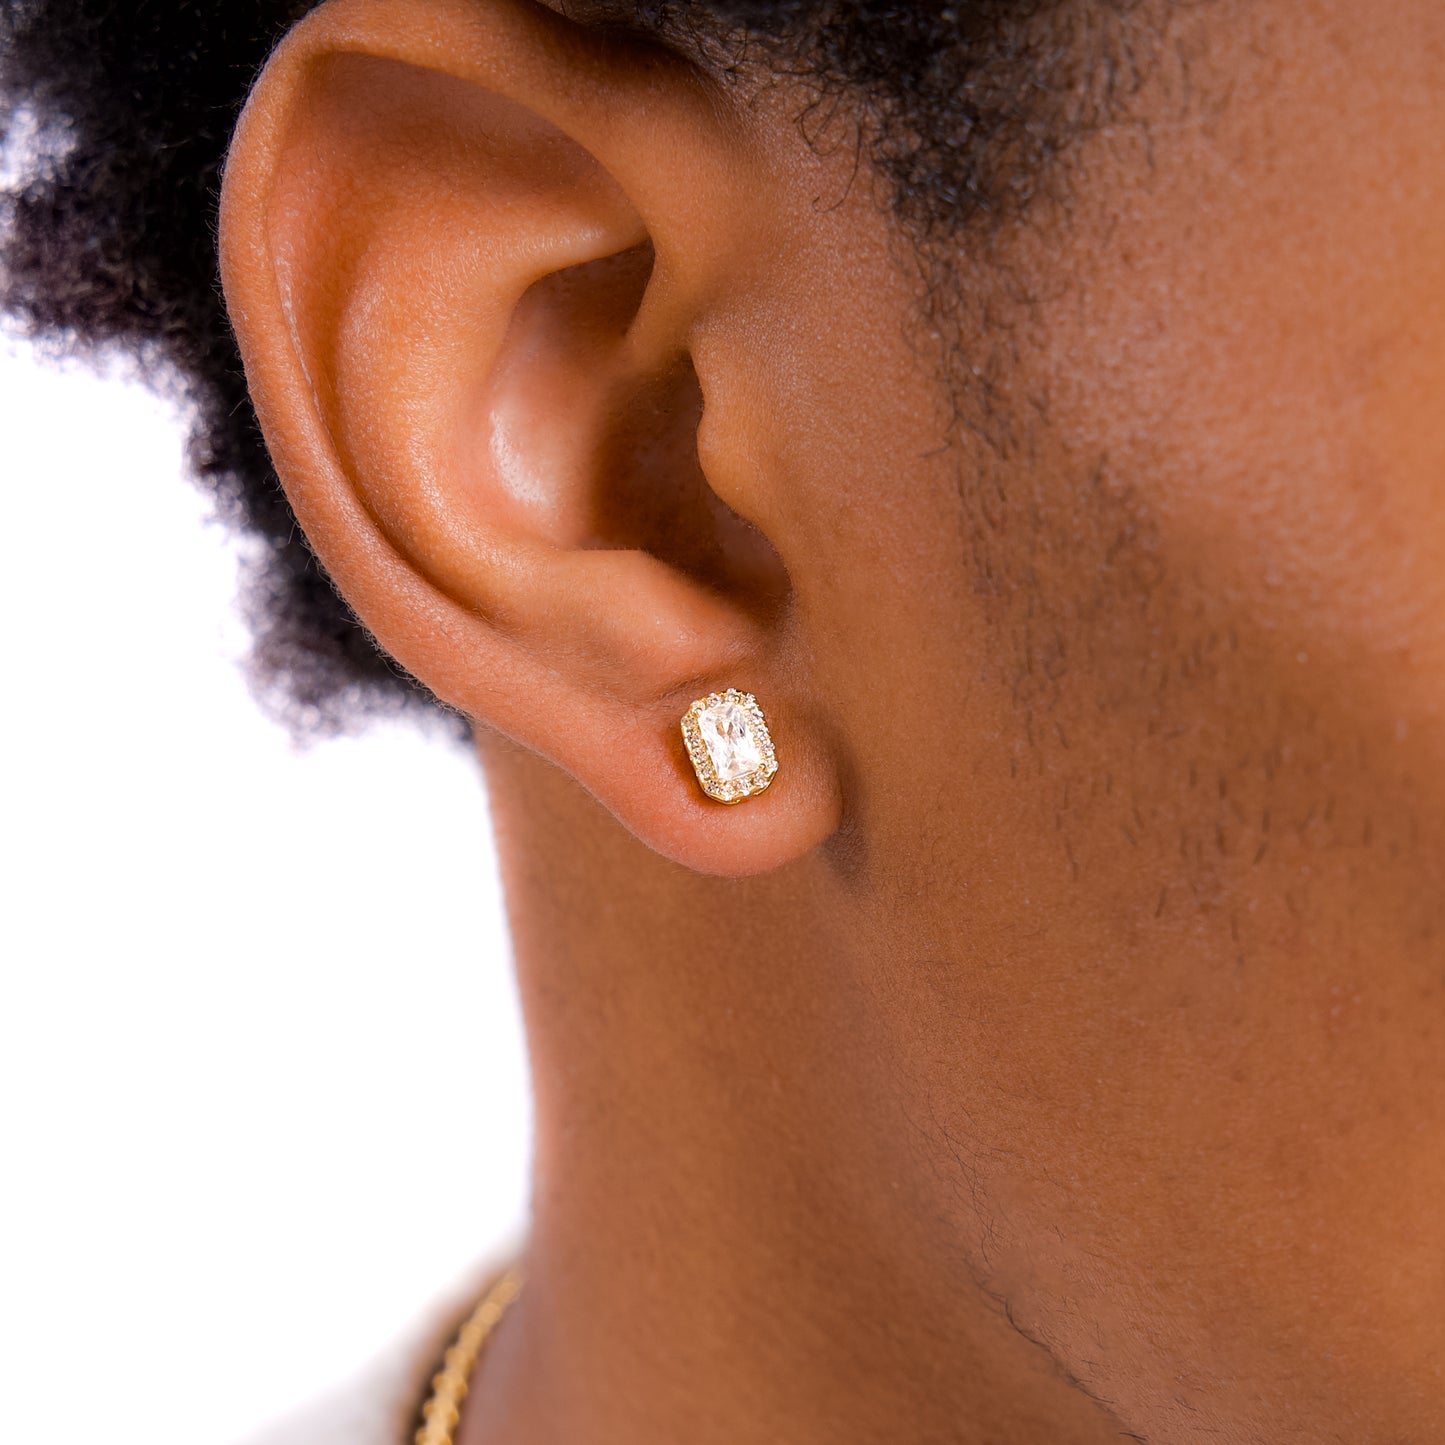 Baguette earrings